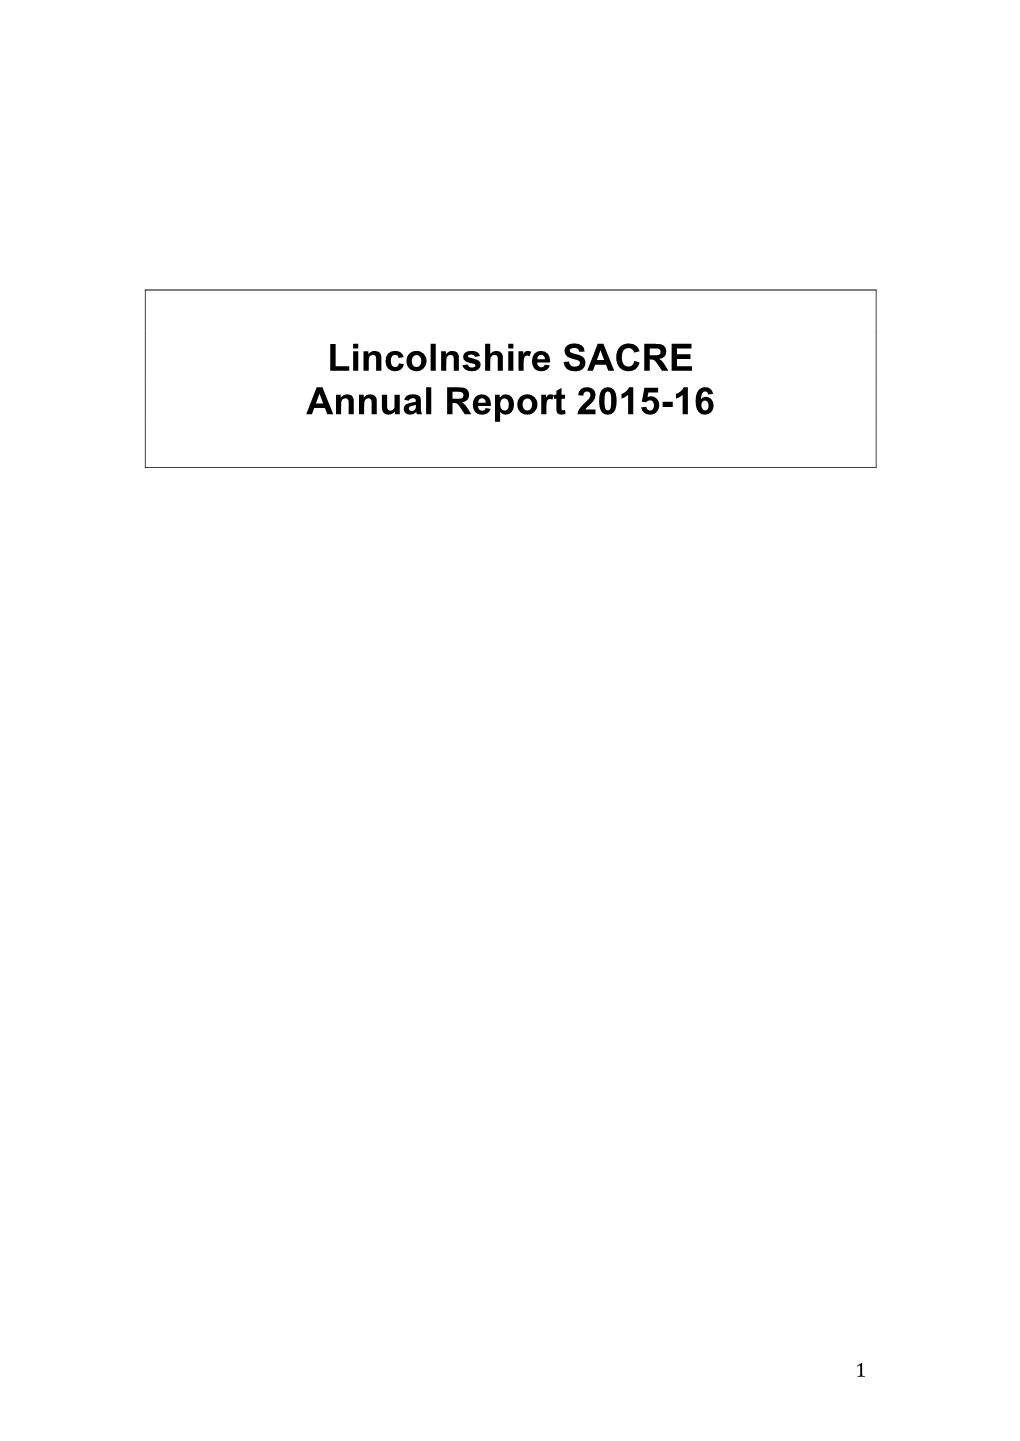 Lincolnshire SACRE Annual Report 2015-16